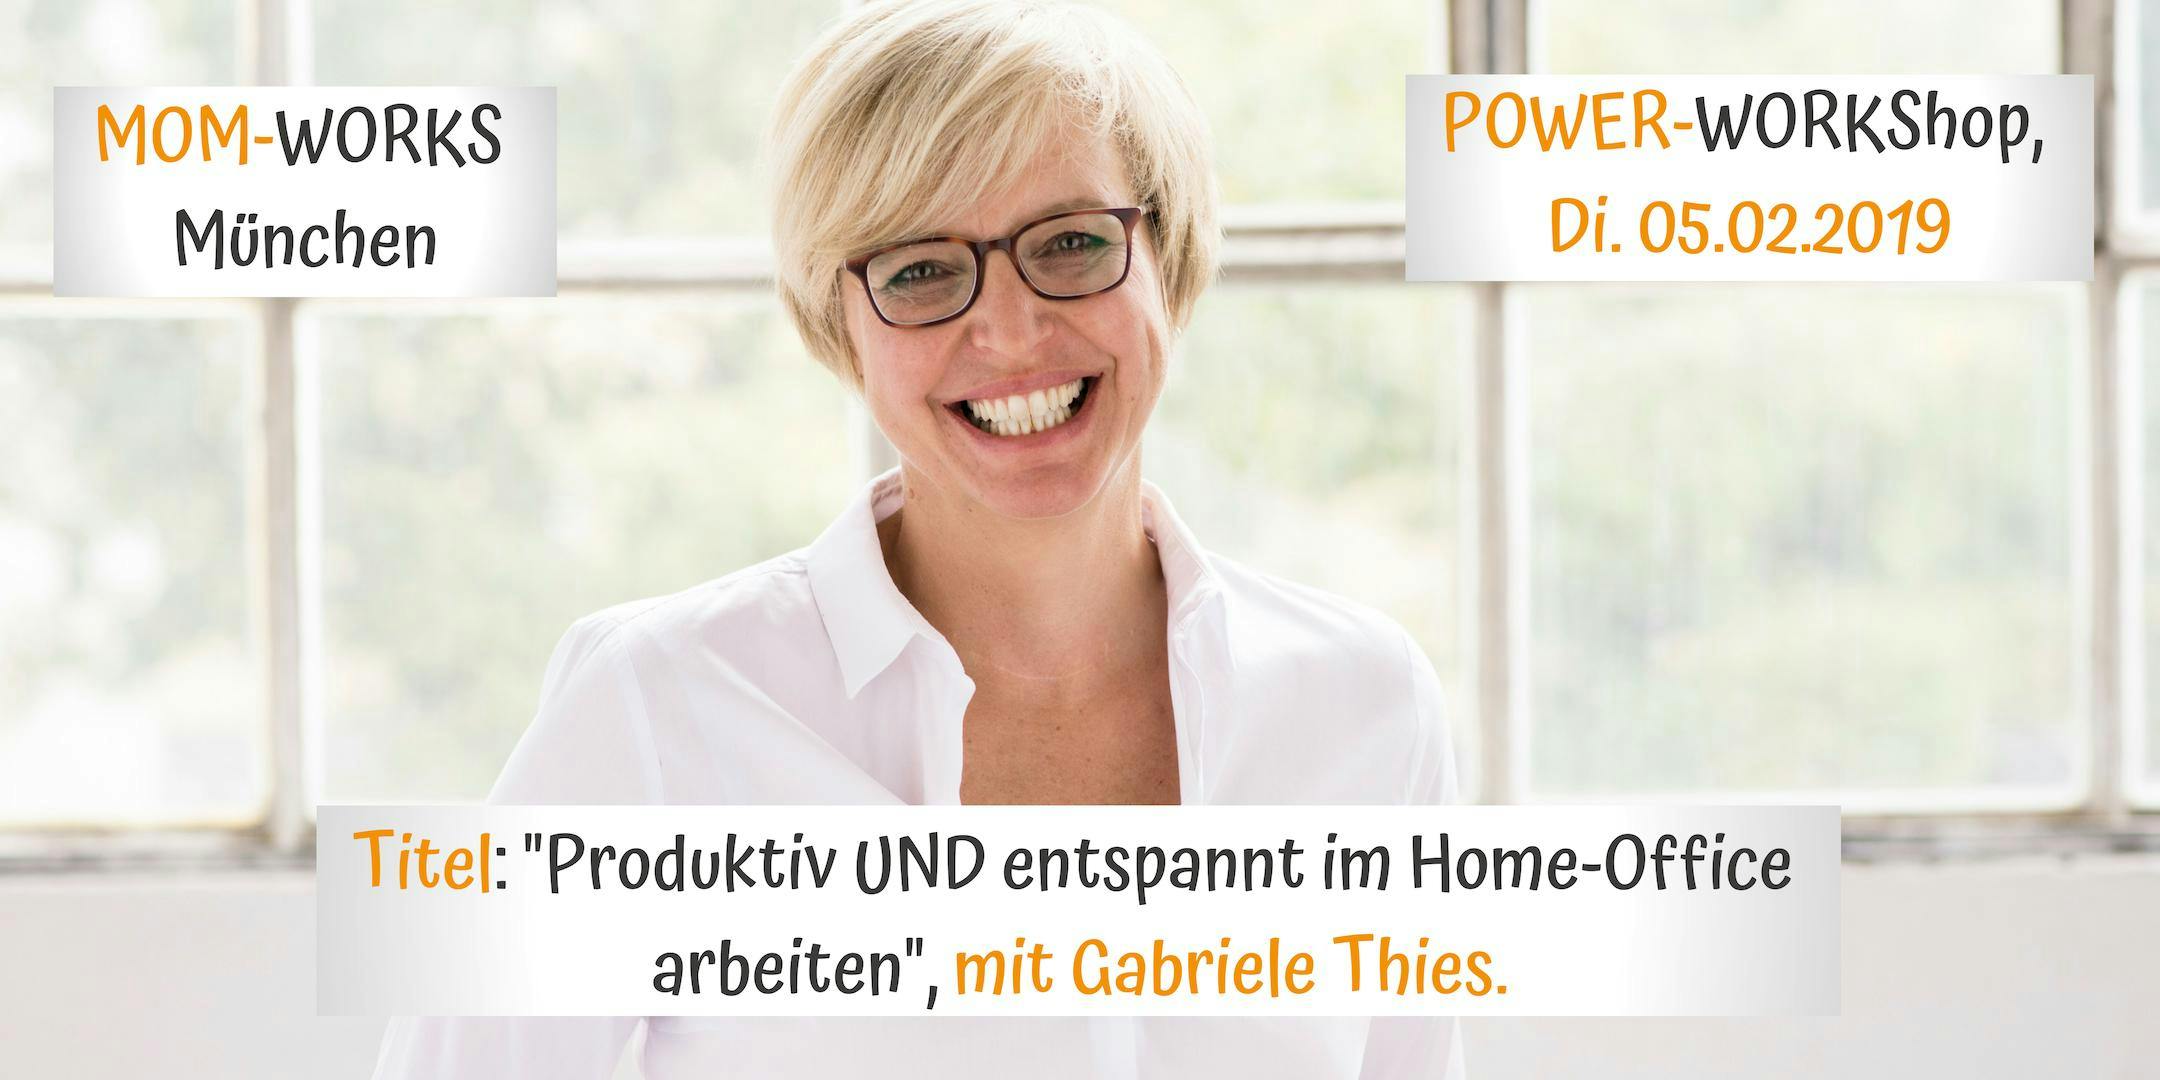 PowerWorkshop: Produktiv UND entspannt im Home-Office arbeiten. Mit Gabriele Thies.